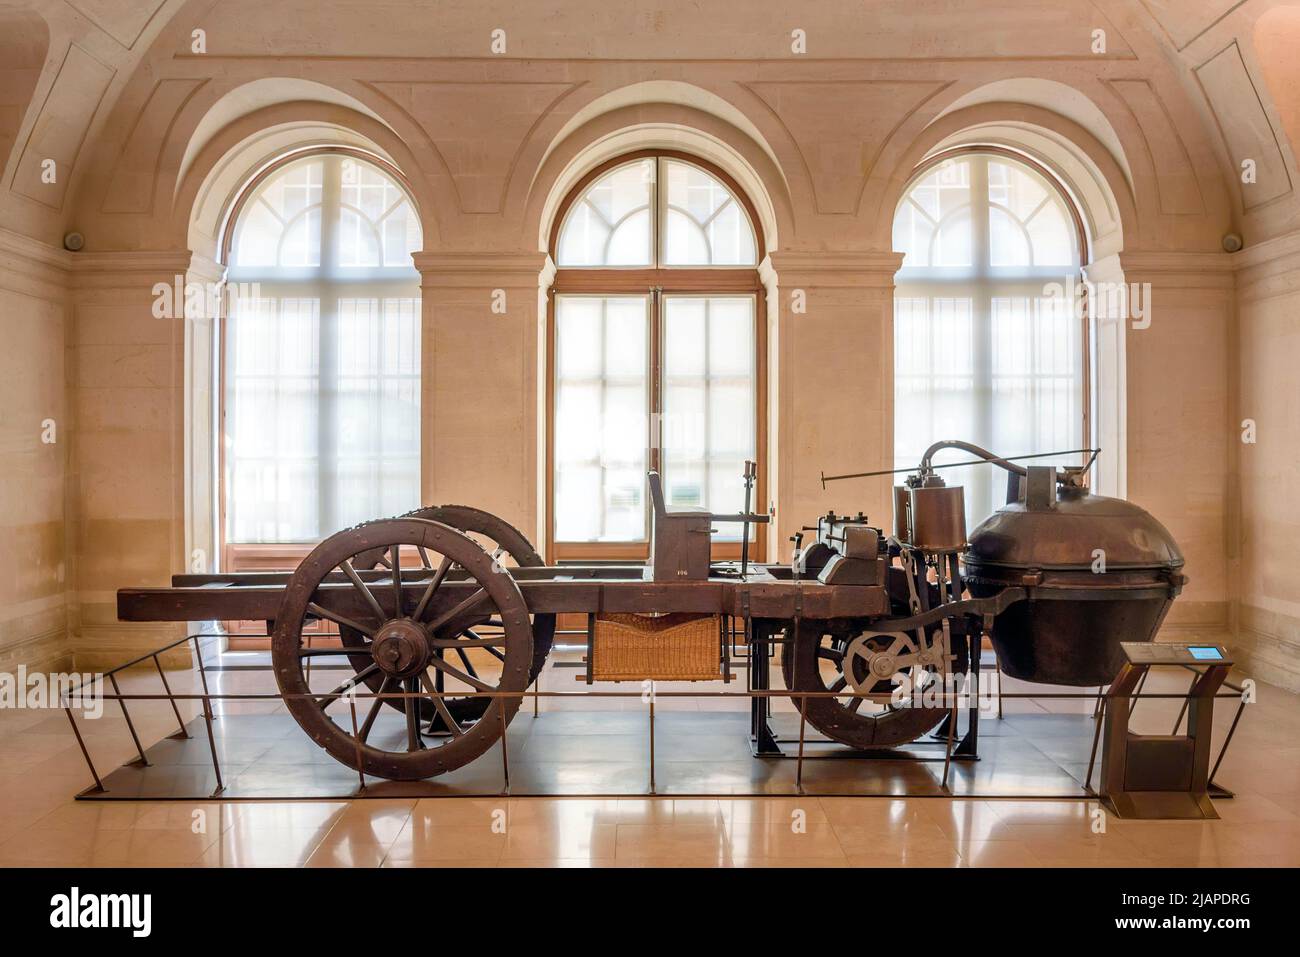 Nicolas-Joseph Cugnot fue un inventor francés que construyó el primer vehículo terrestre mecánico autopropulsado de tamaño completo y en funcionamiento del mundo, el 'Fardier ˆ vaporeur' Ð, en realidad el primer automóvil del mundo. Cugnot's 1770 fardier ˆ vaporeur, conservado en el MusŽe des Arts et MŽtiers, París, Francia Foto de stock